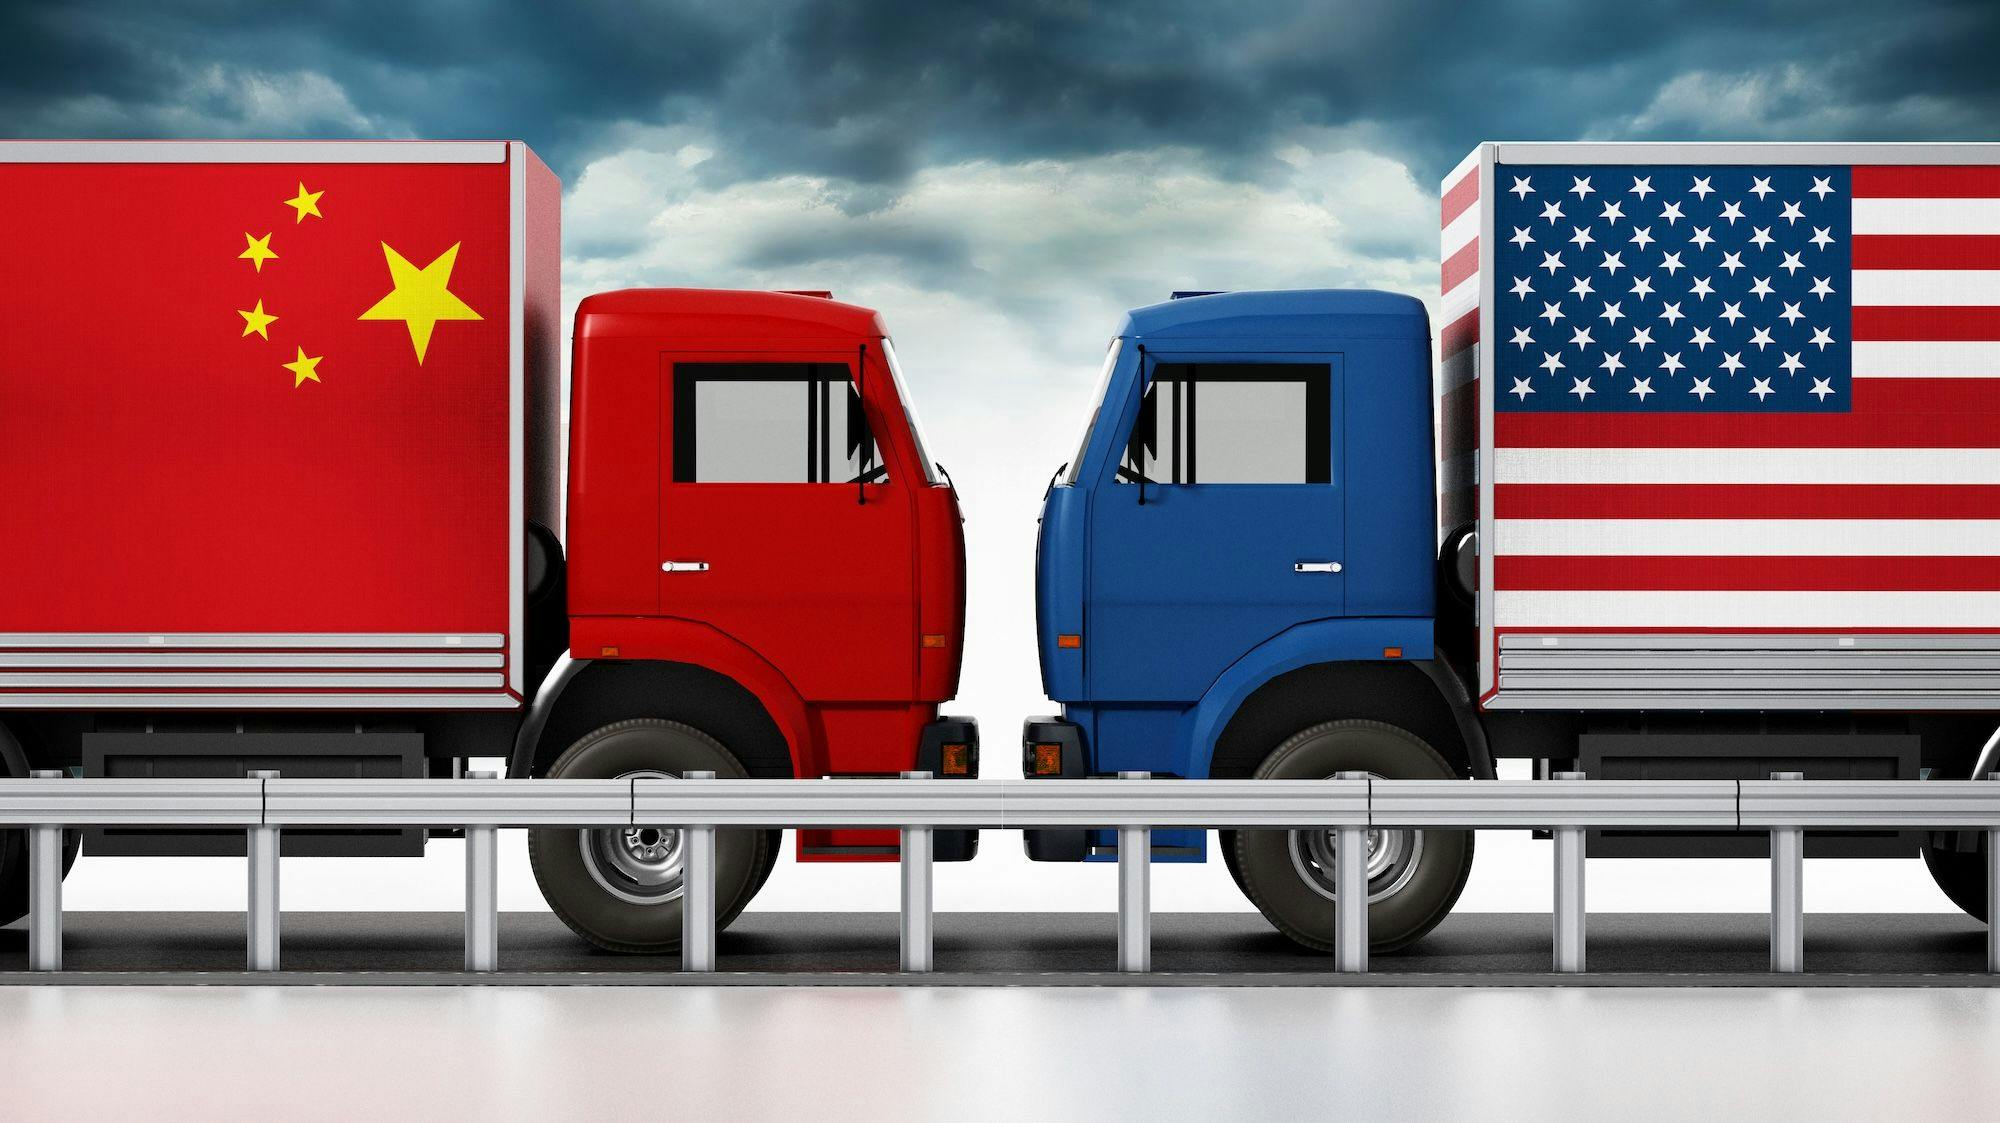 China Wirtschaft, China USA, Anti-China Politik, Handel, Export, Import: Lastwagen mit USA- und China-Flaggen begegnen sich auf enger Straße.